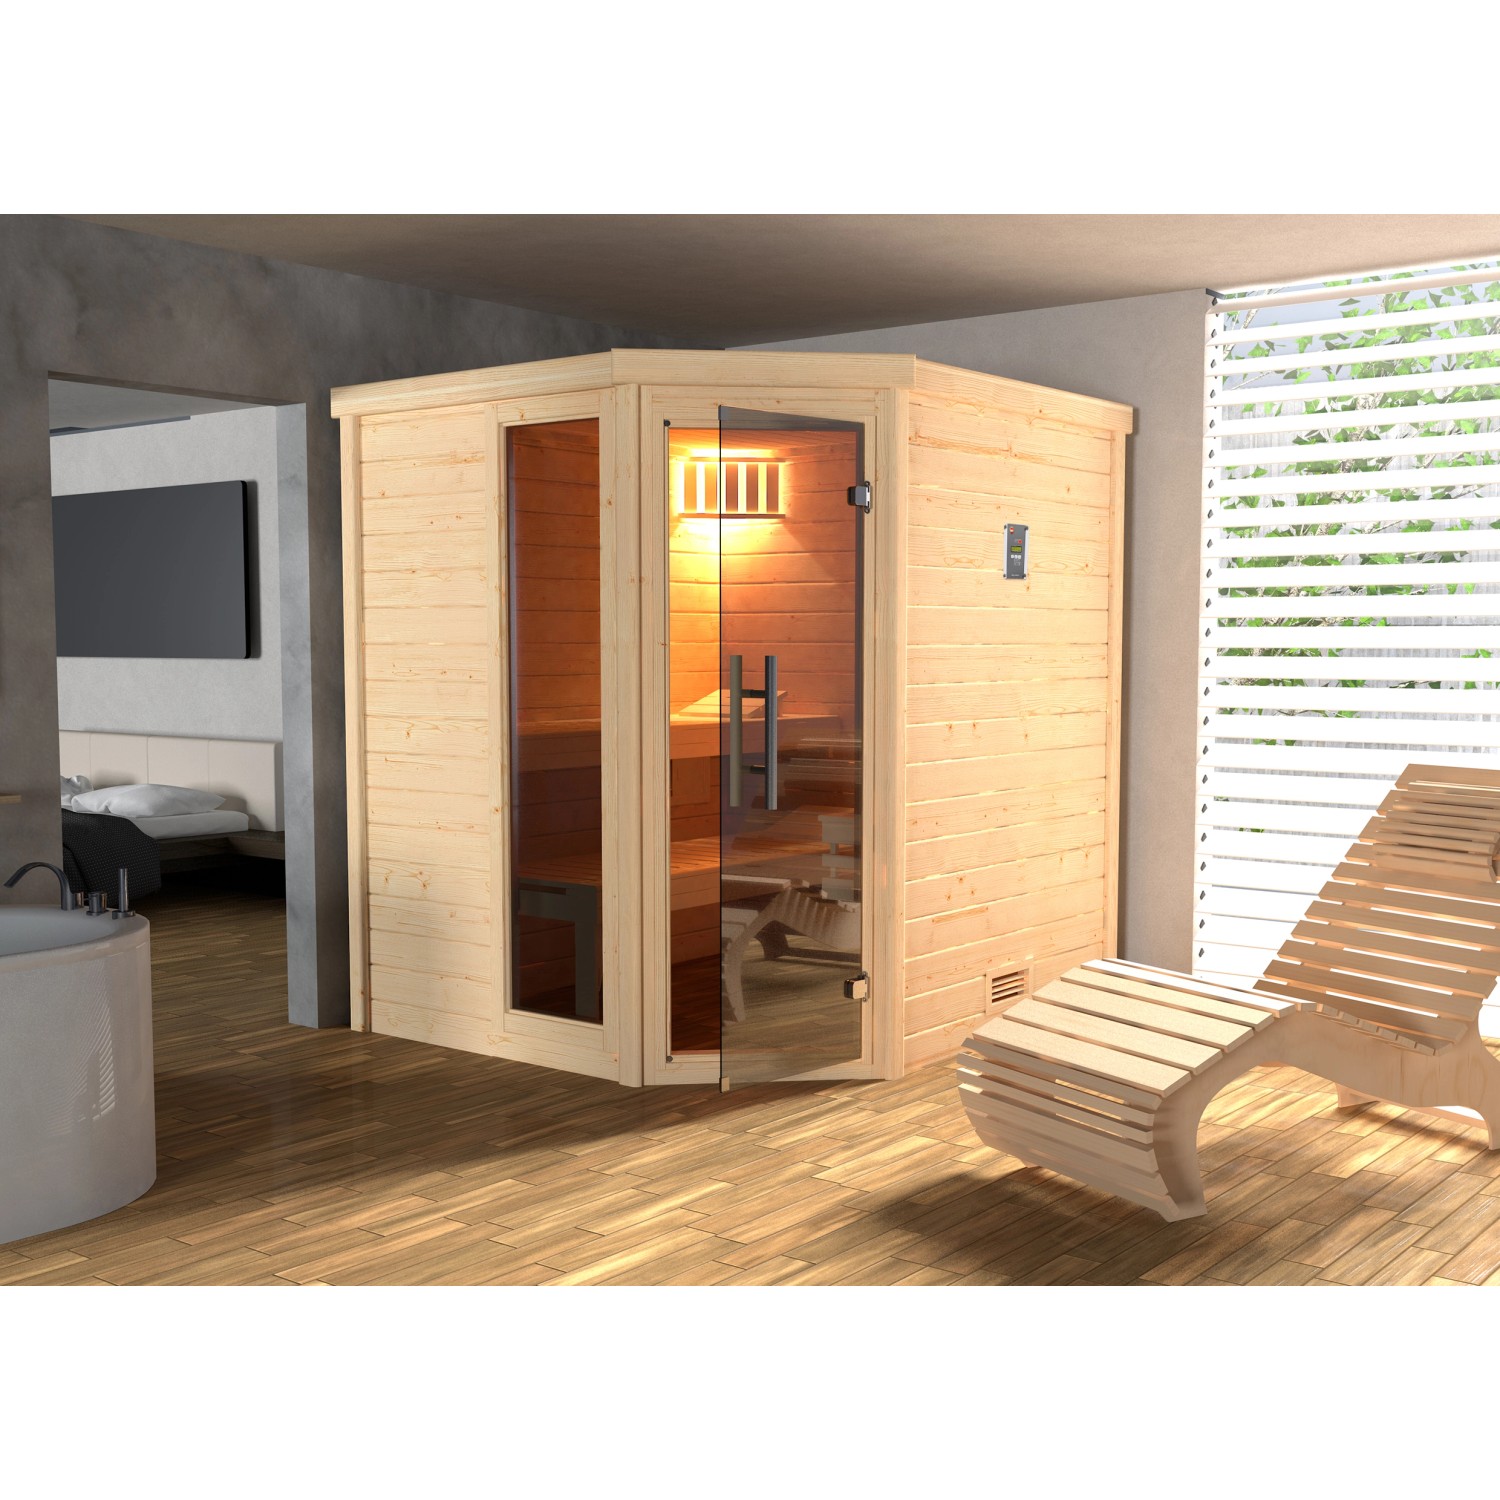 Weka Sauna Turku 1 Sparset2,BioS-Ofen,digitale Strg, Glastür Graphit mit Fenster von WEKA